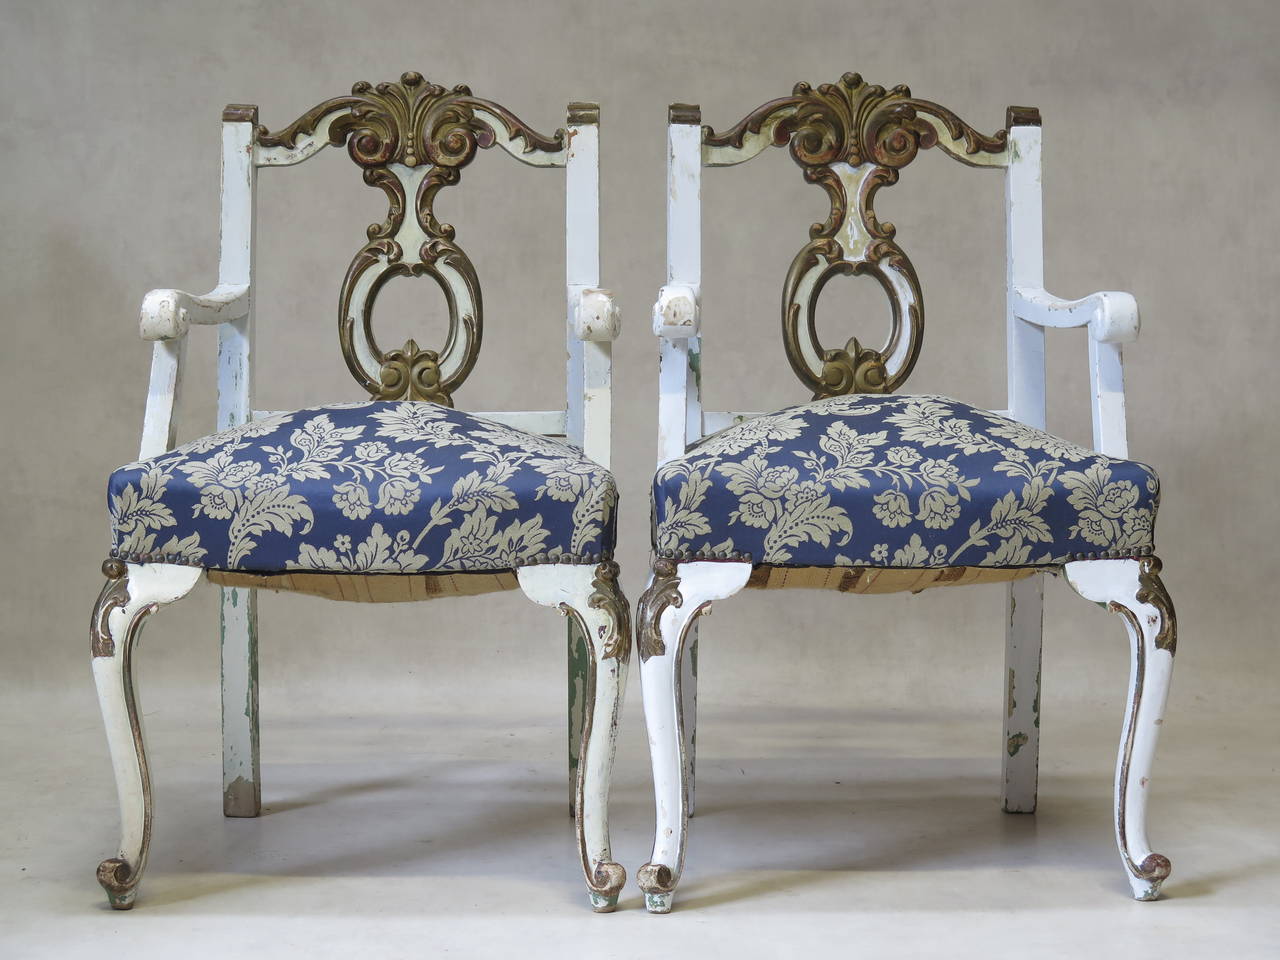 Charmantes Paar Sessel im Louis-XV-Stil aus dem frühen zwanzigsten Jahrhundert, weiß lackiert mit brünierten Goldakzenten und einer früheren hellgrünen Farbe, die darunter sichtbar ist. Kräftig geschnitzt. Die Armlehnen enden in Schnörkeln. Cabriole